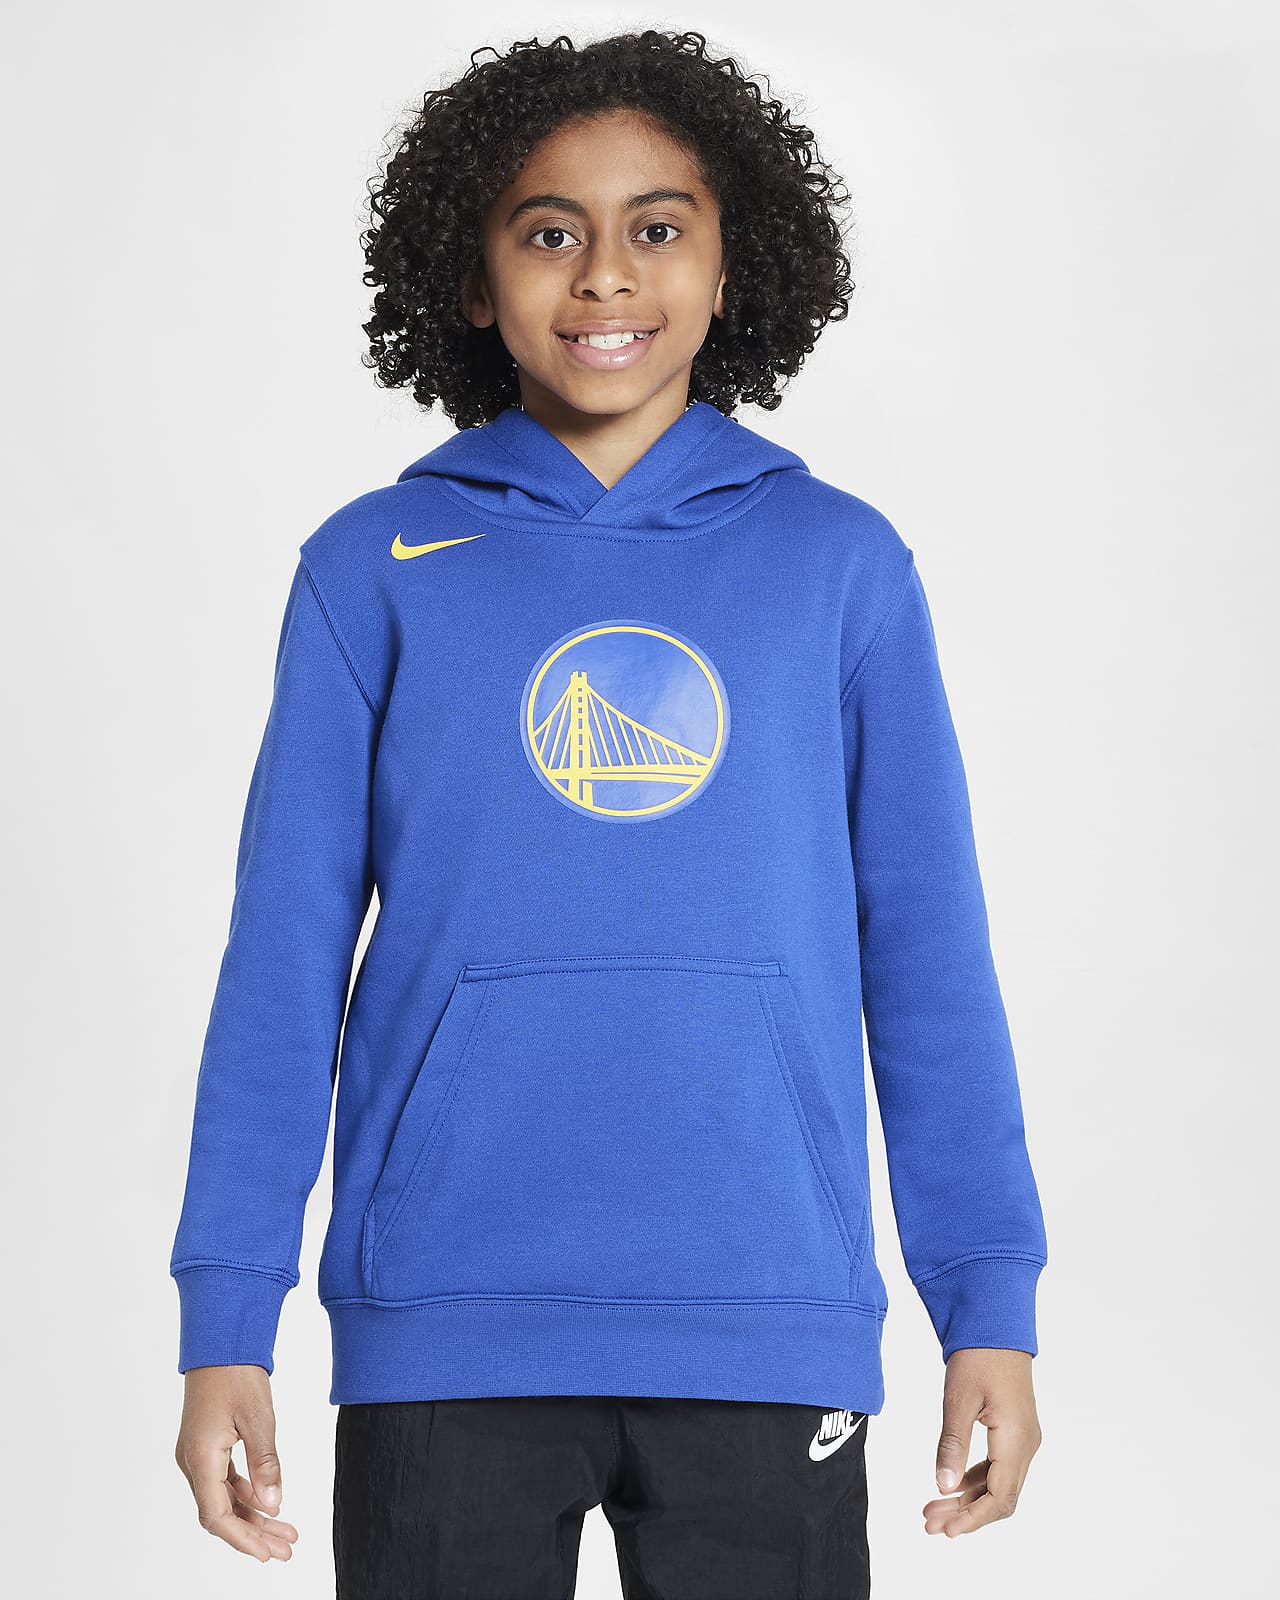 Flísová mikina Nike NBA Golden State Warriors Club s kapucí pro větší děti